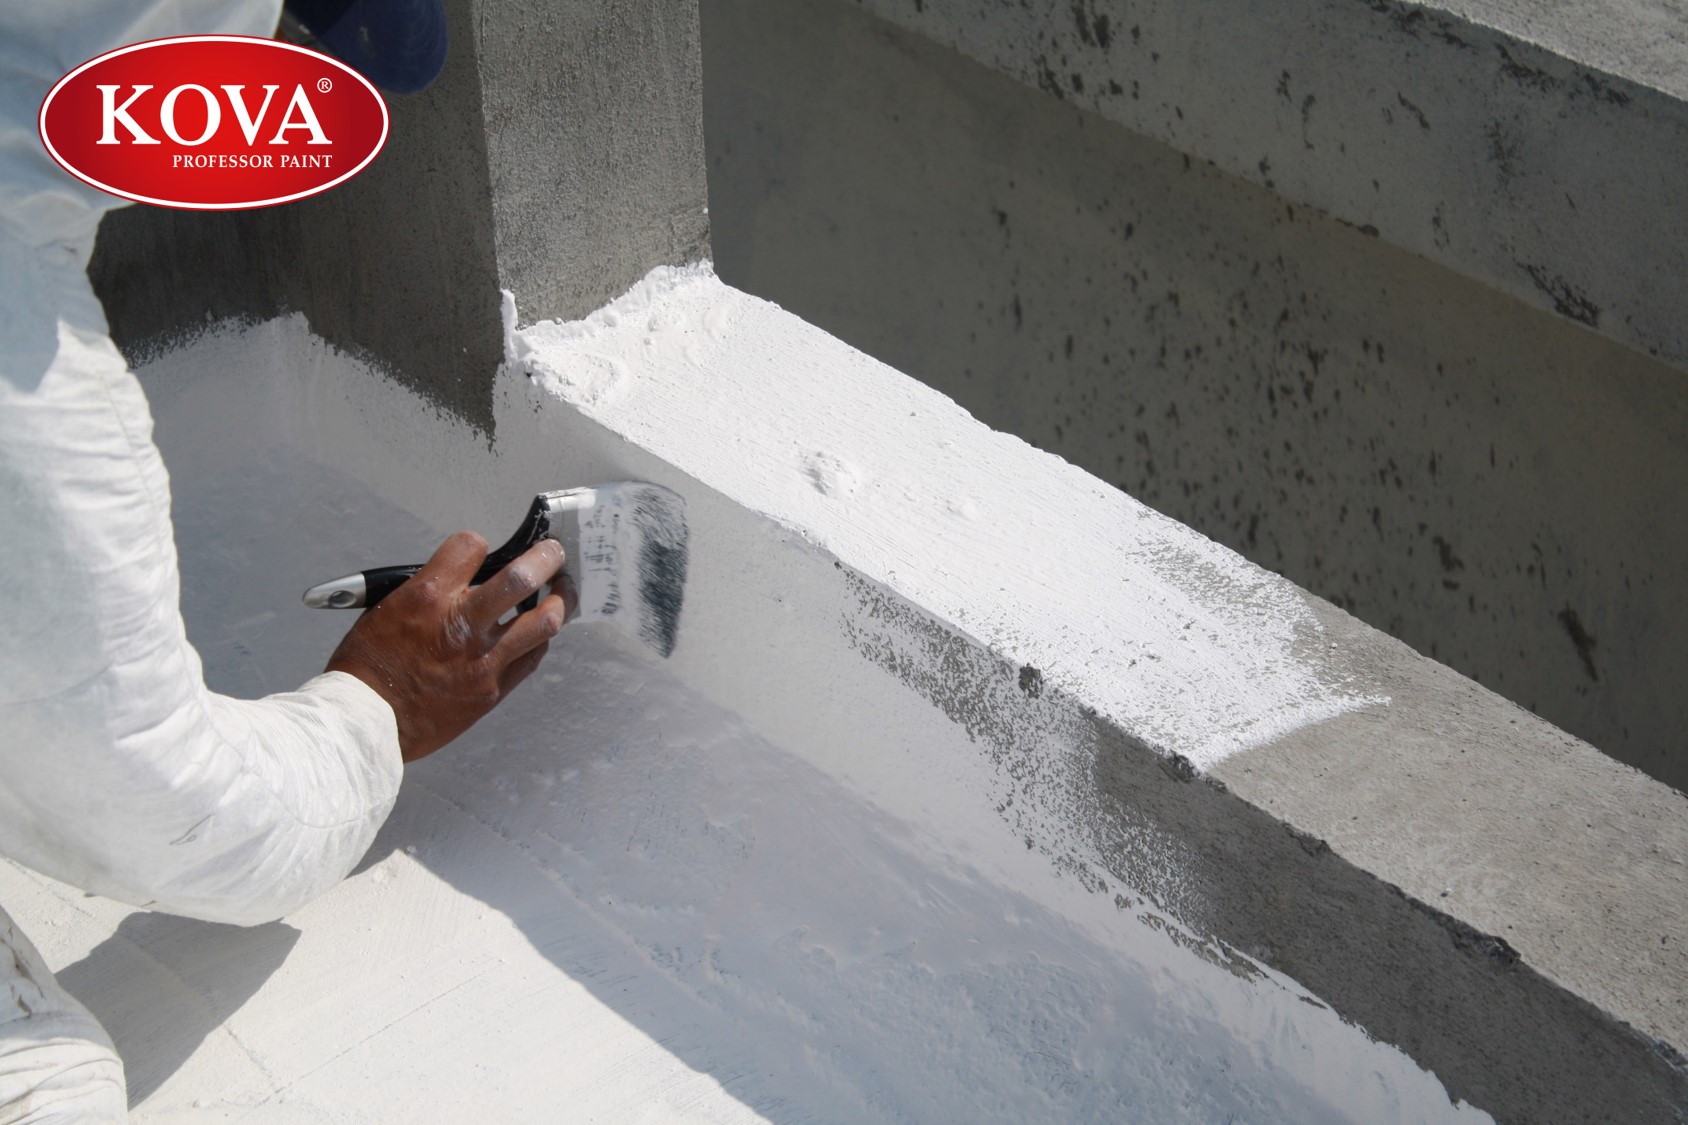 Với các sản phẩm chống thấm tường tốt nhất, bạn có thể yên tâm sử dụng không lo dột nước hay bị hư hỏng vì ẩm ướt.